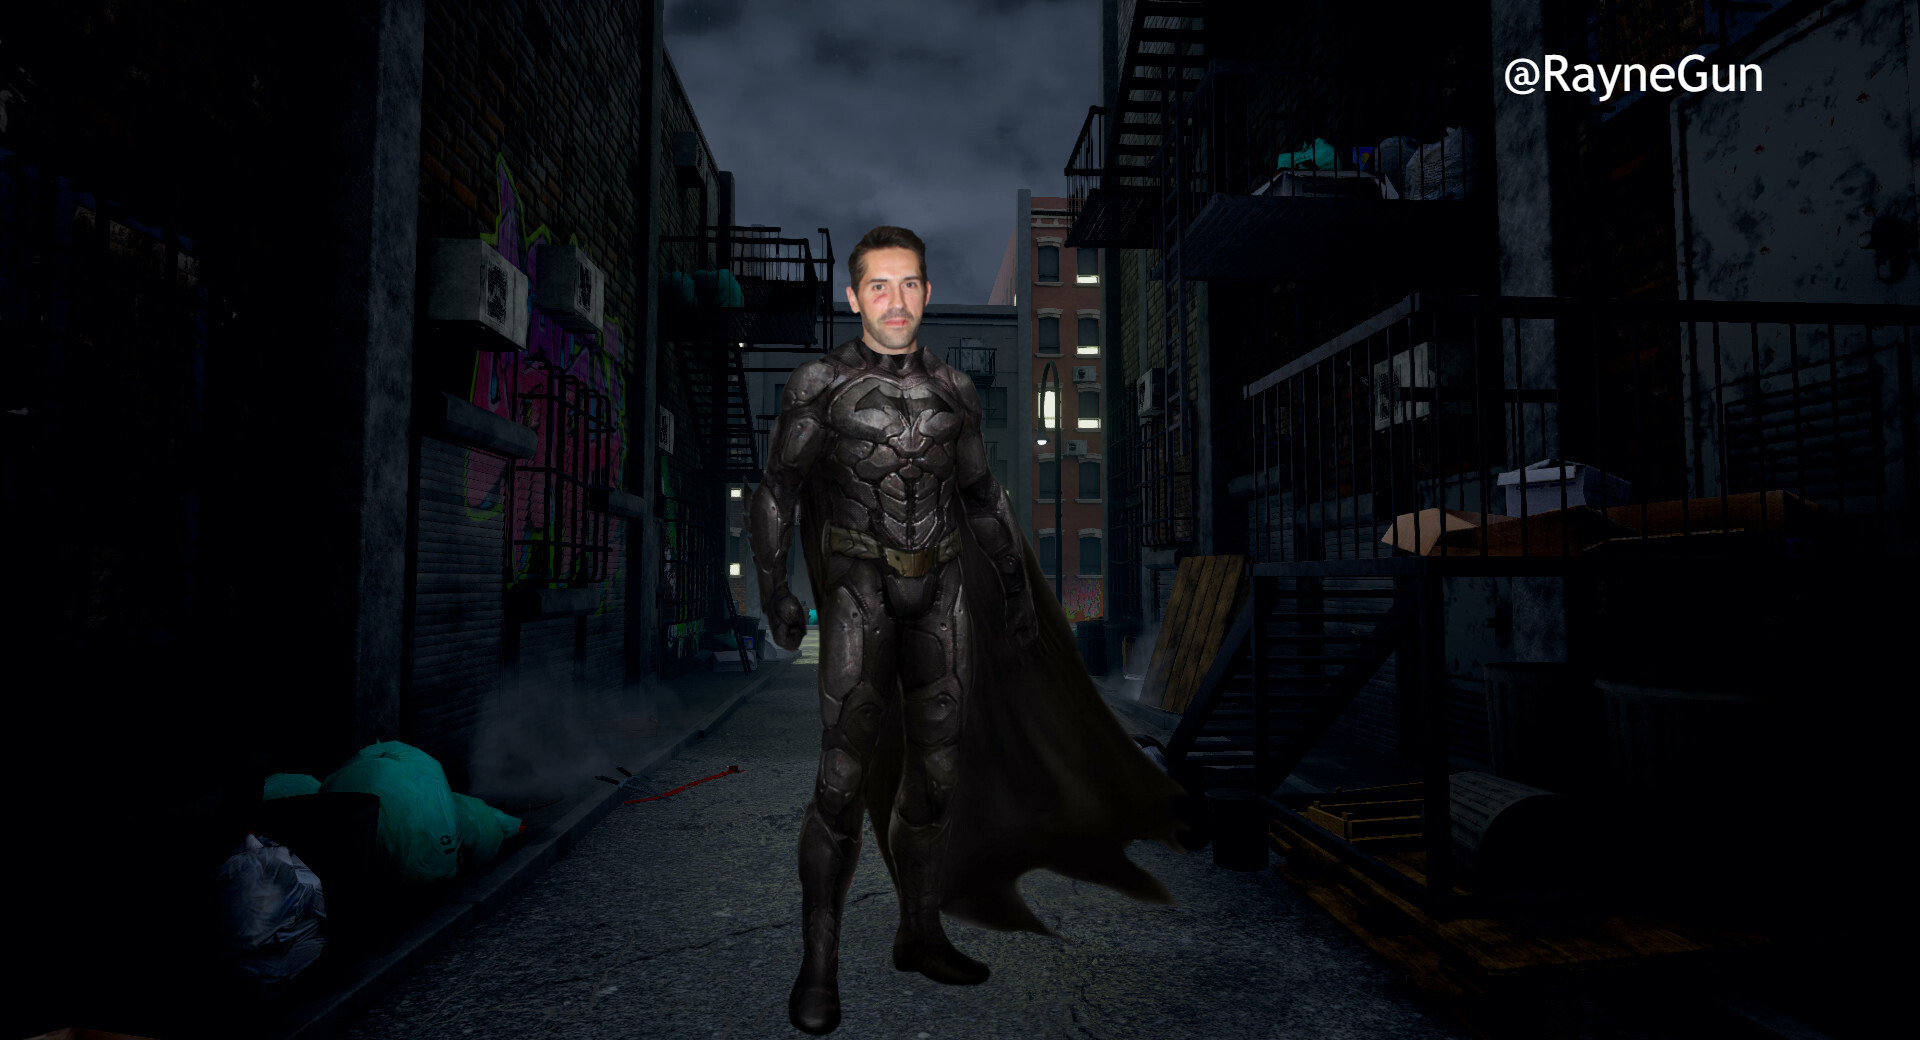 ArtStation - Scott Adkins As Batman